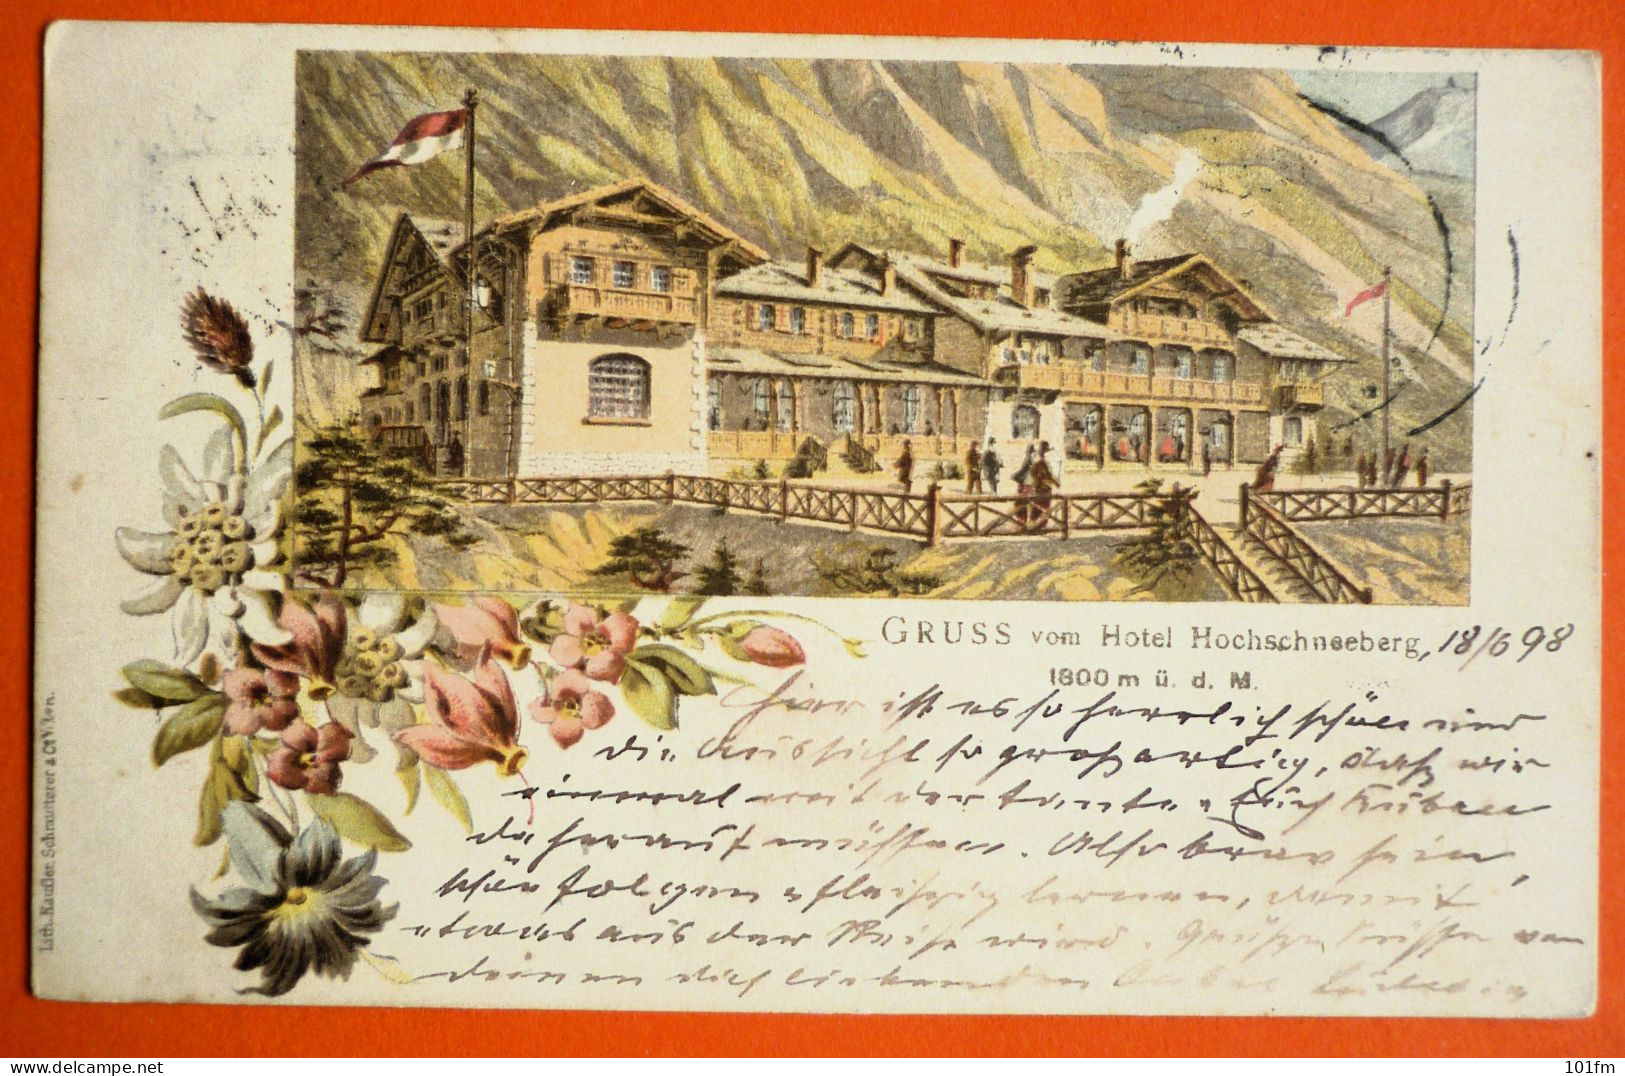 AUSTRIA - SCHNEEBERGGEBIET, GRUSS VOM HOTEL HOCHSCHNEEBERG, OLD LITHO 1898 - Schneeberggebiet